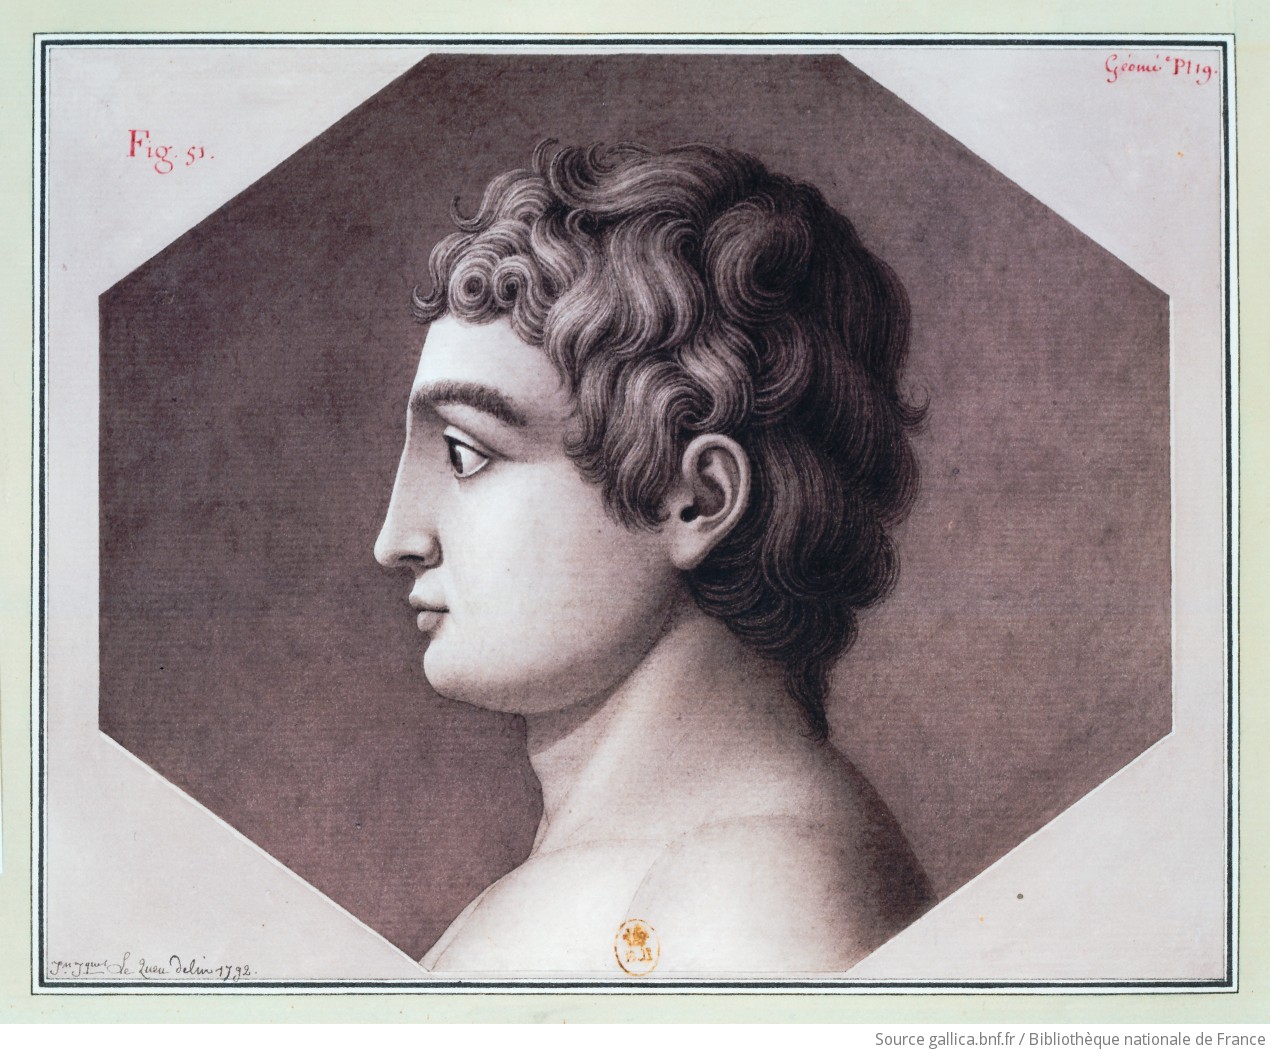 [Tête, vue de profil] : [dessin] / Jn Jques Le Queu delin. 1792 - 1